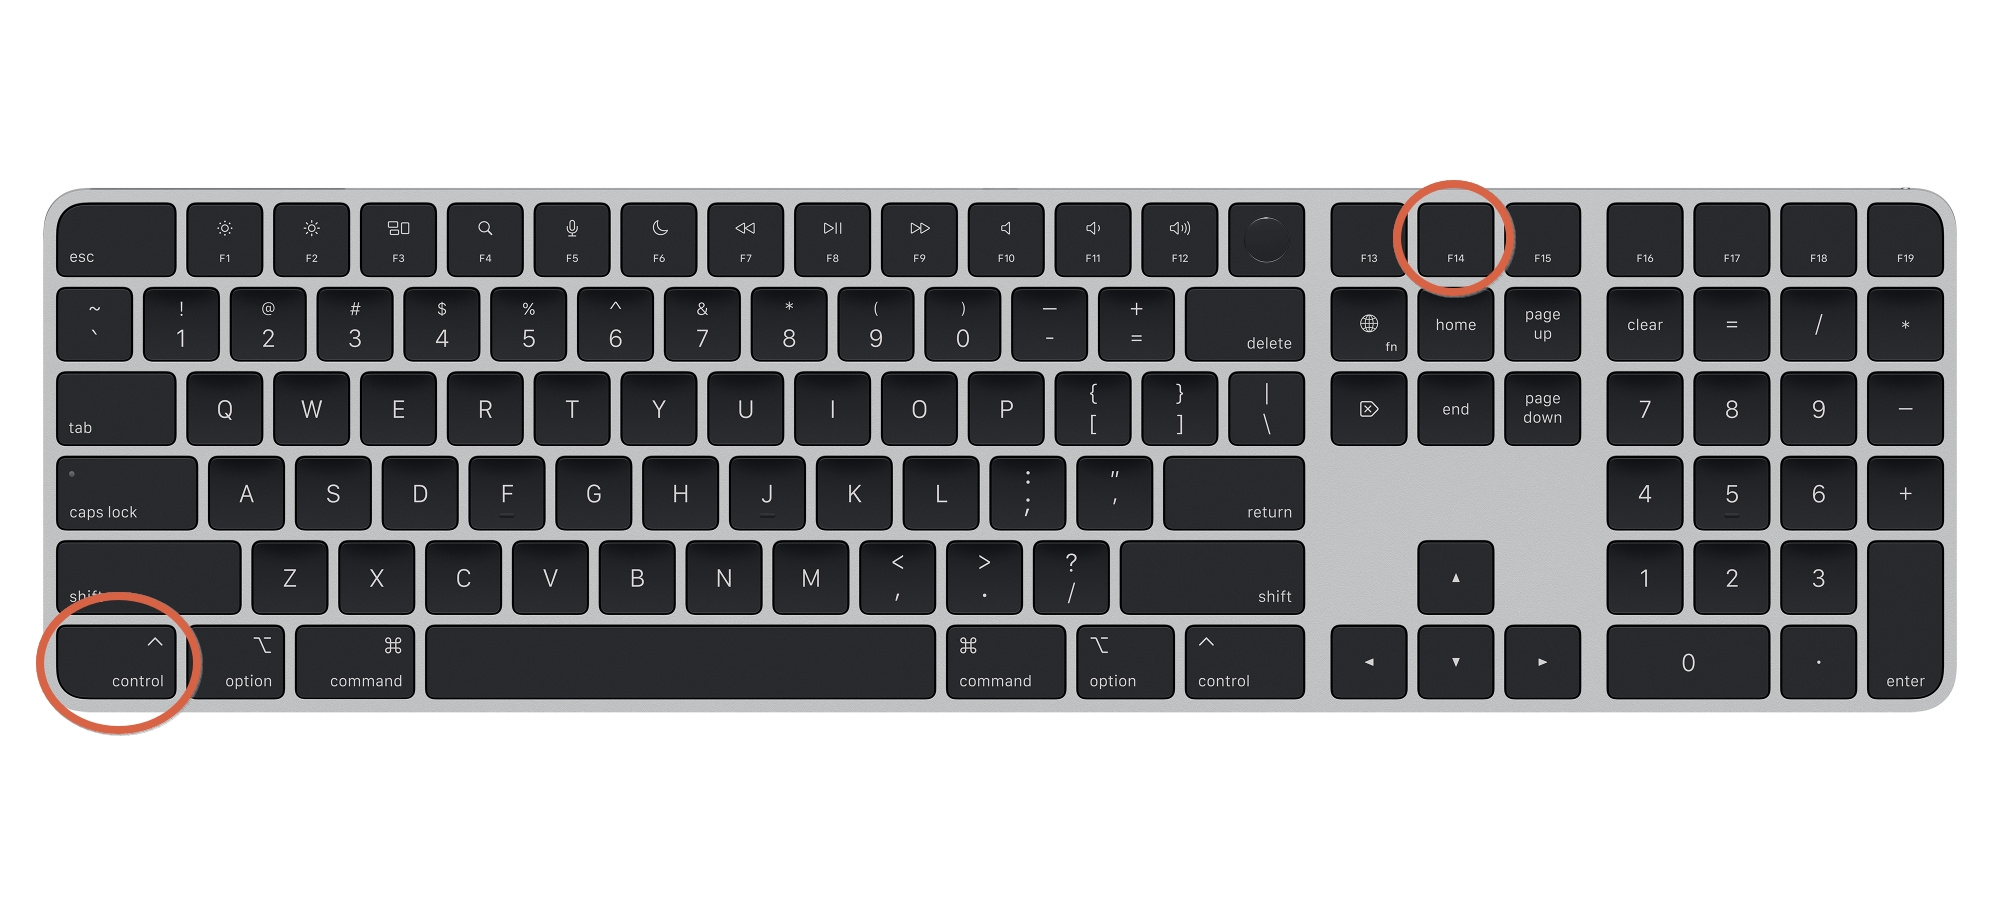 Scroll Lock on Apple's External Full-Sized Keyboard